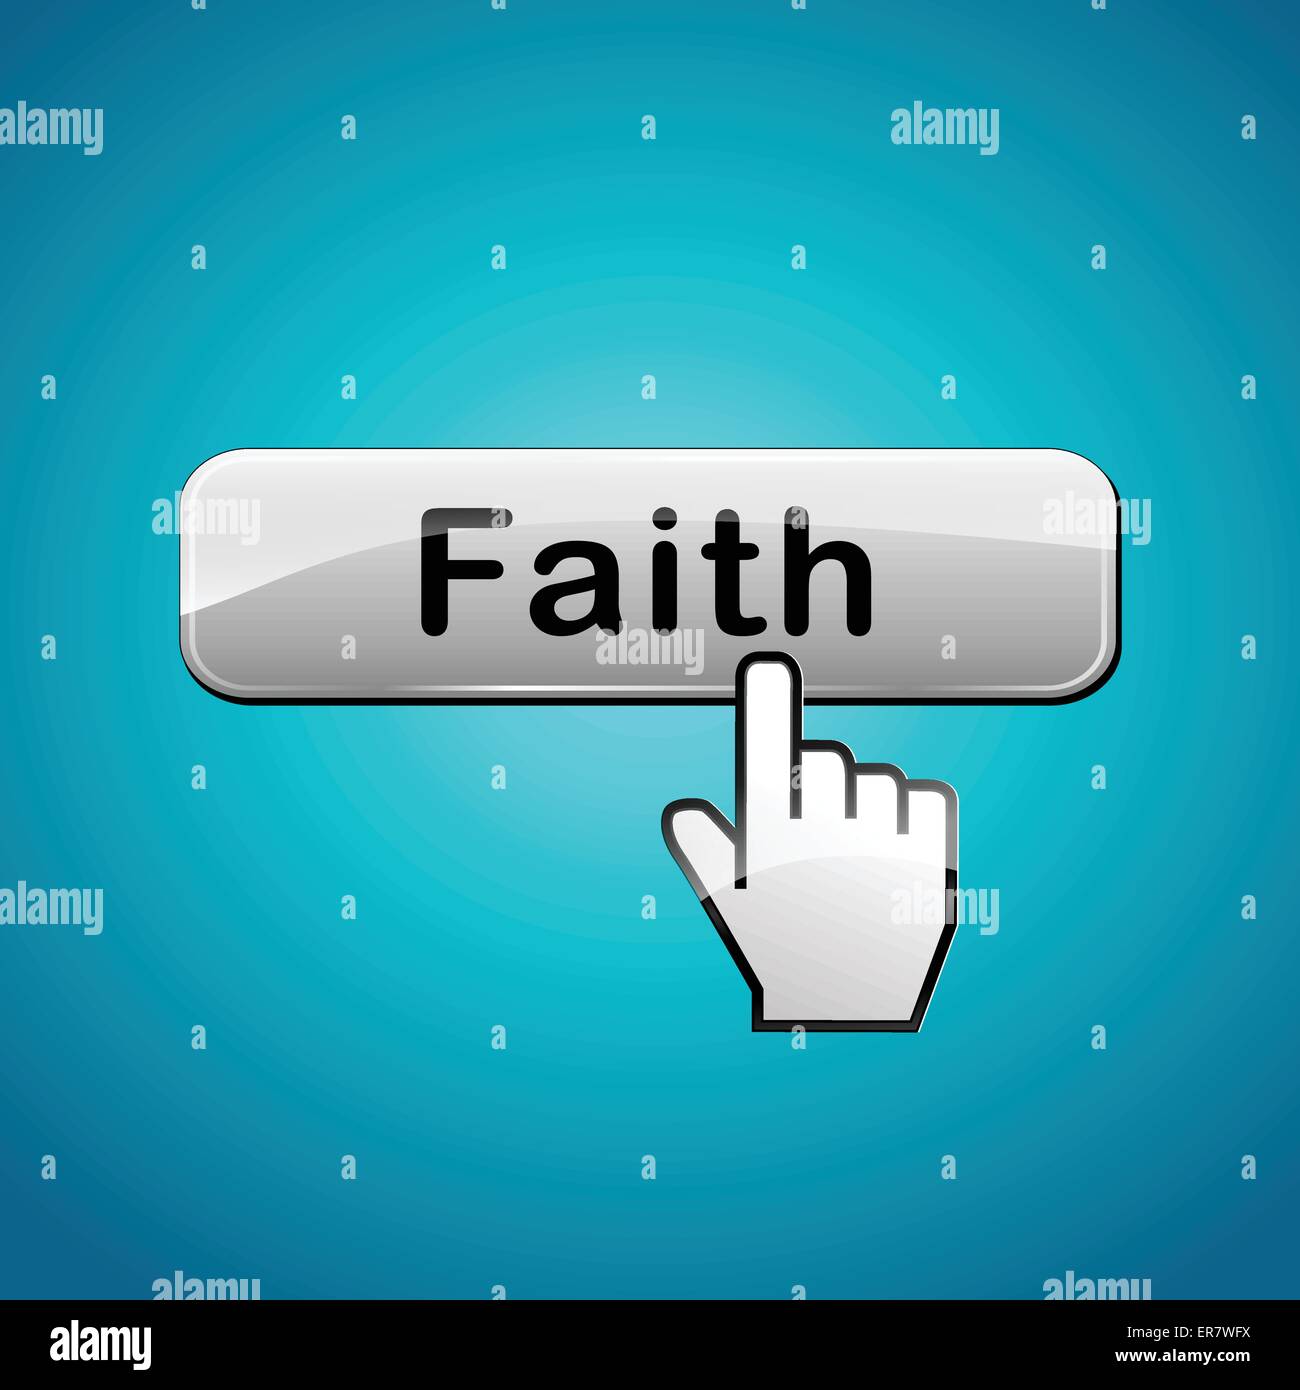 Vector illustration of faith web button concept Stock Vector